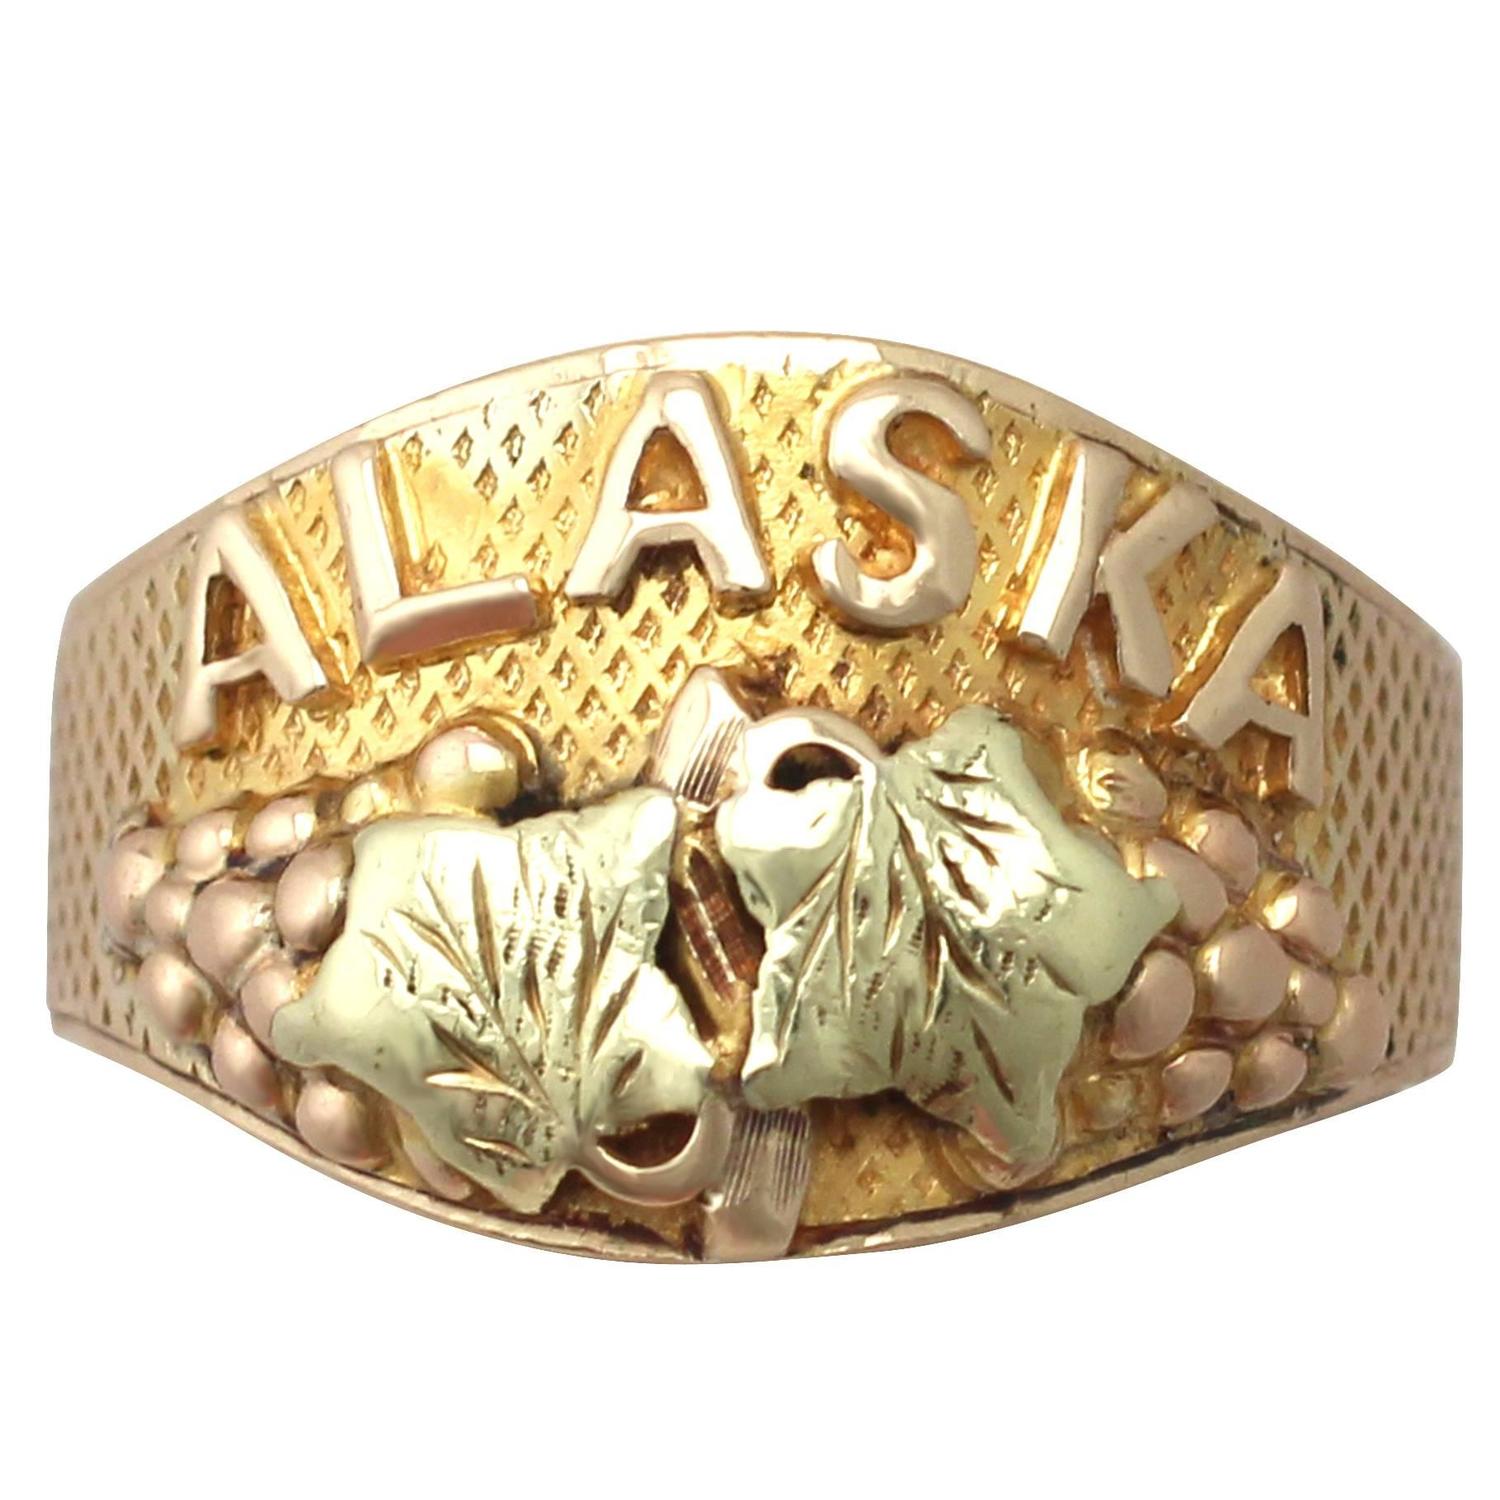 1950s Black Hills Gold Alaska Ring For Sale at 1stdibs